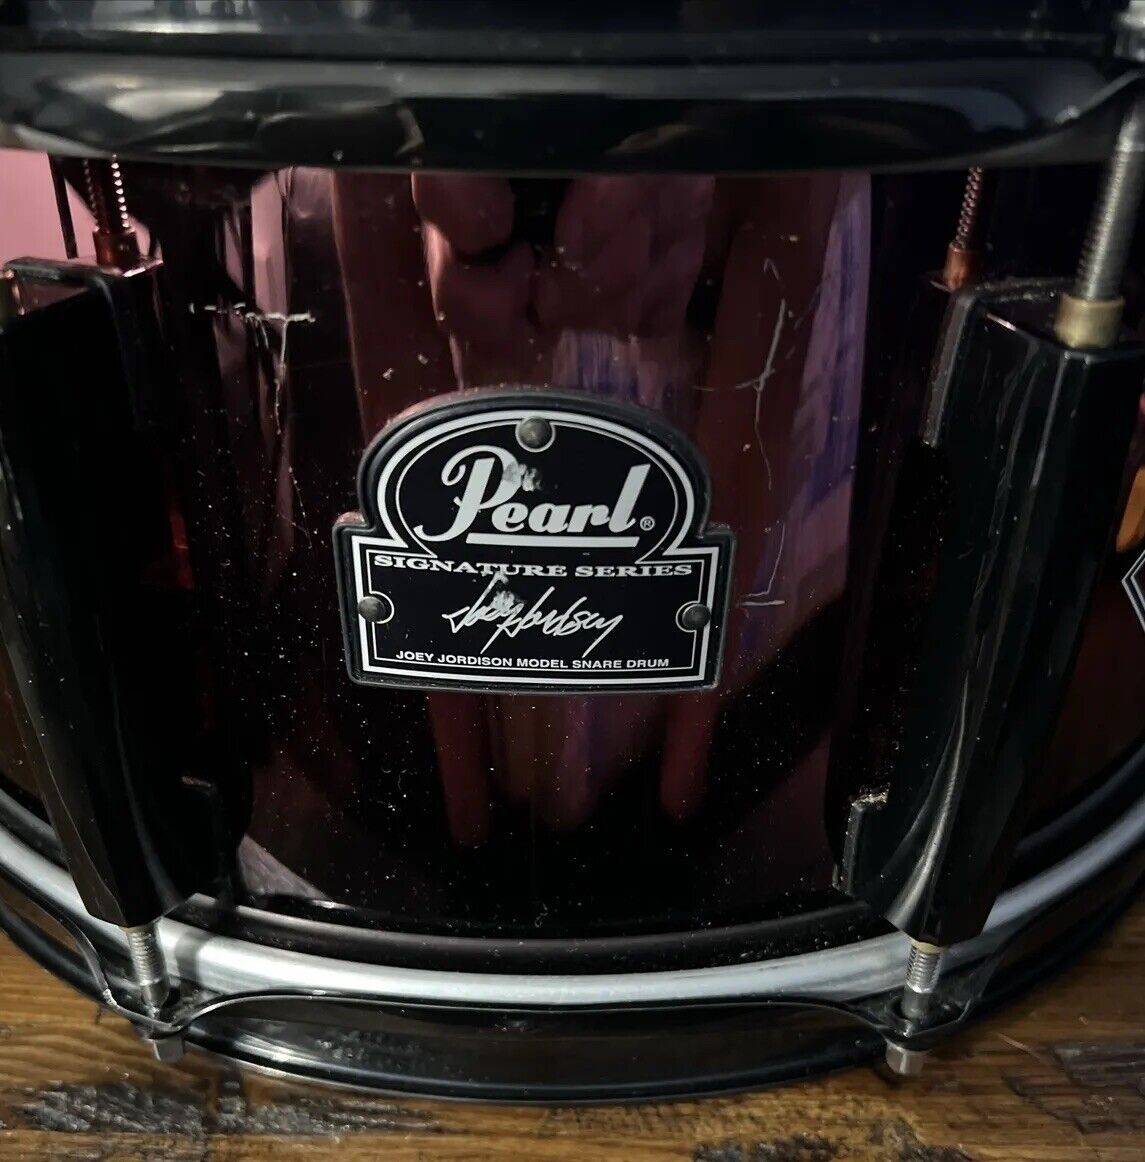 Pearl Signature Series Joey Jordison Snare Drum Serial Number JJ091443 1